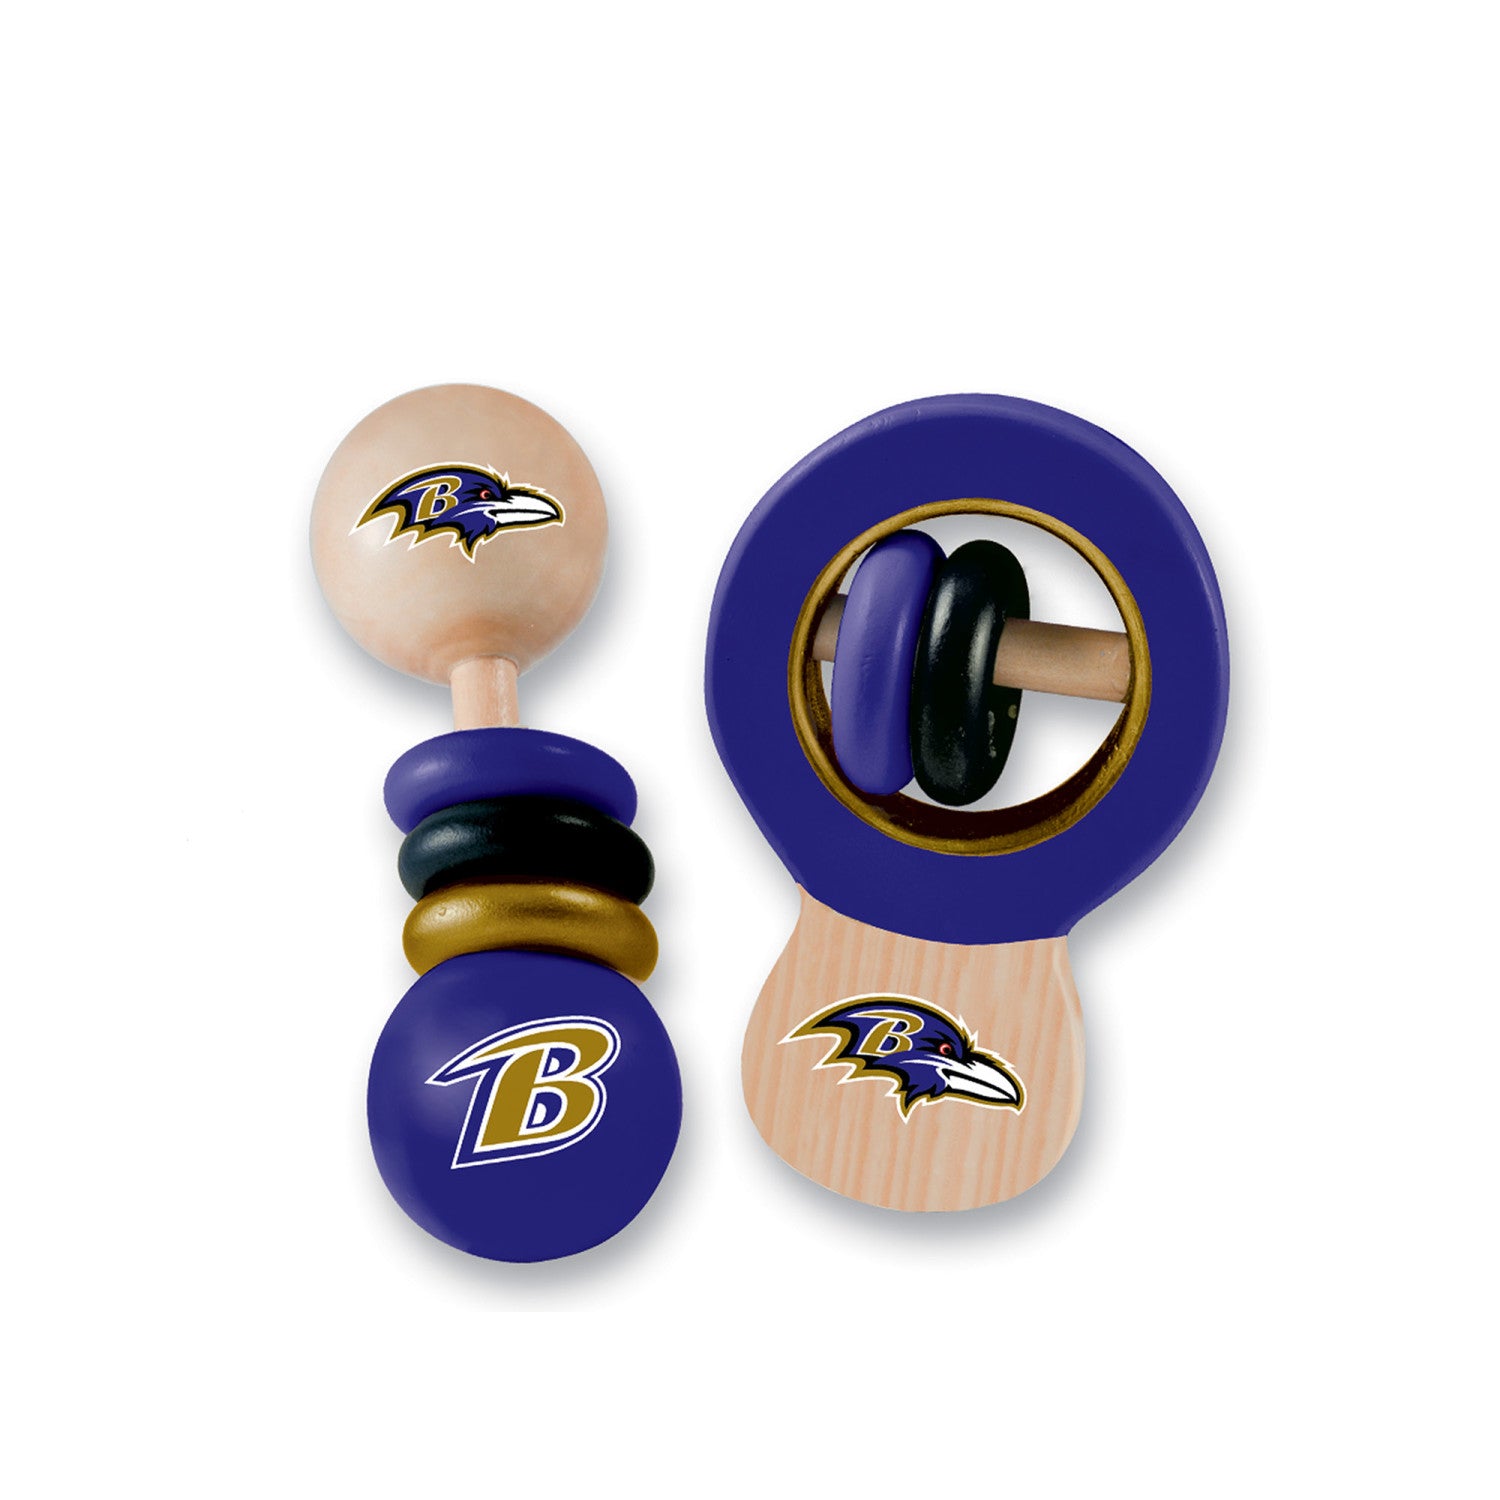 Baltimore Ravens - Baby Rattles 2-Pack